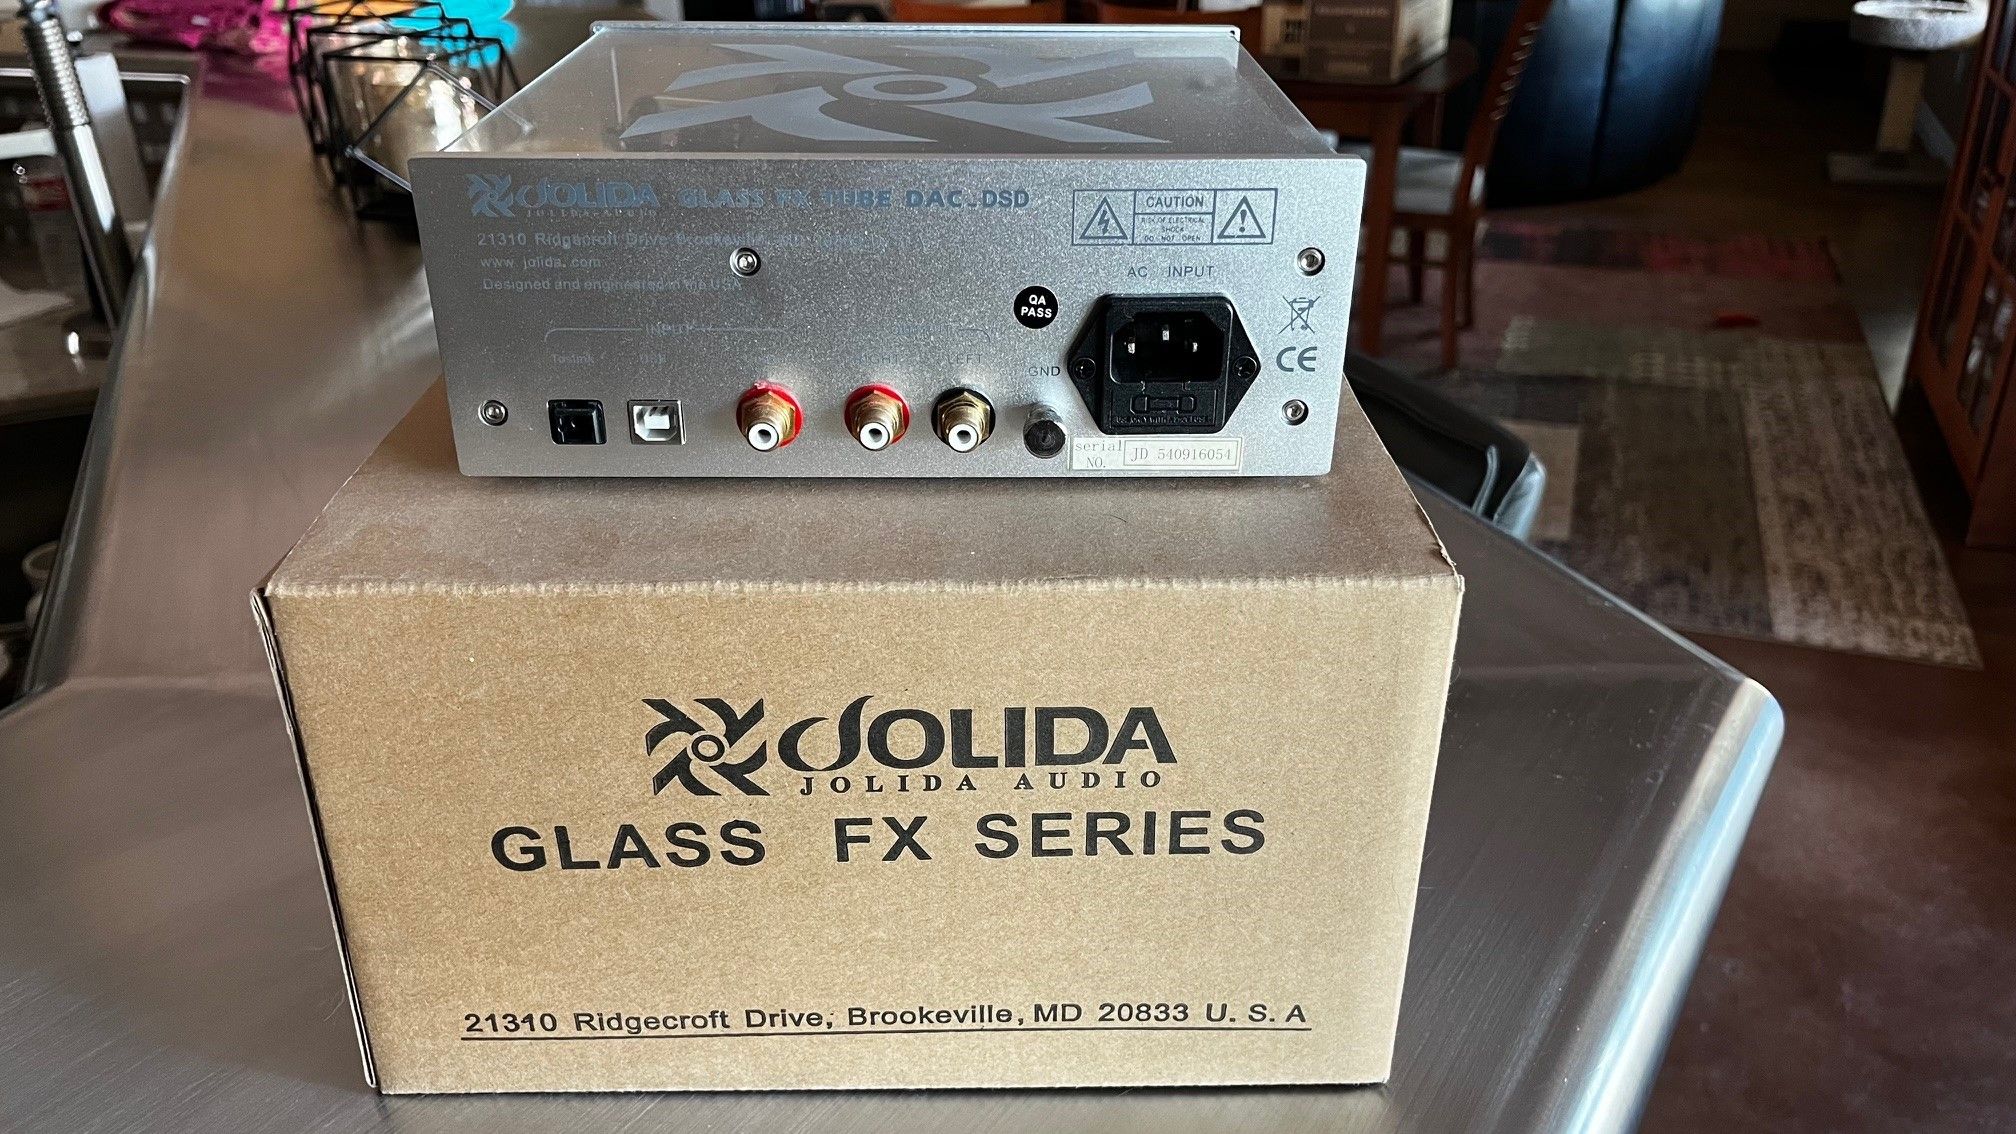 Jolida Glass FX Tube DAC DSD 2